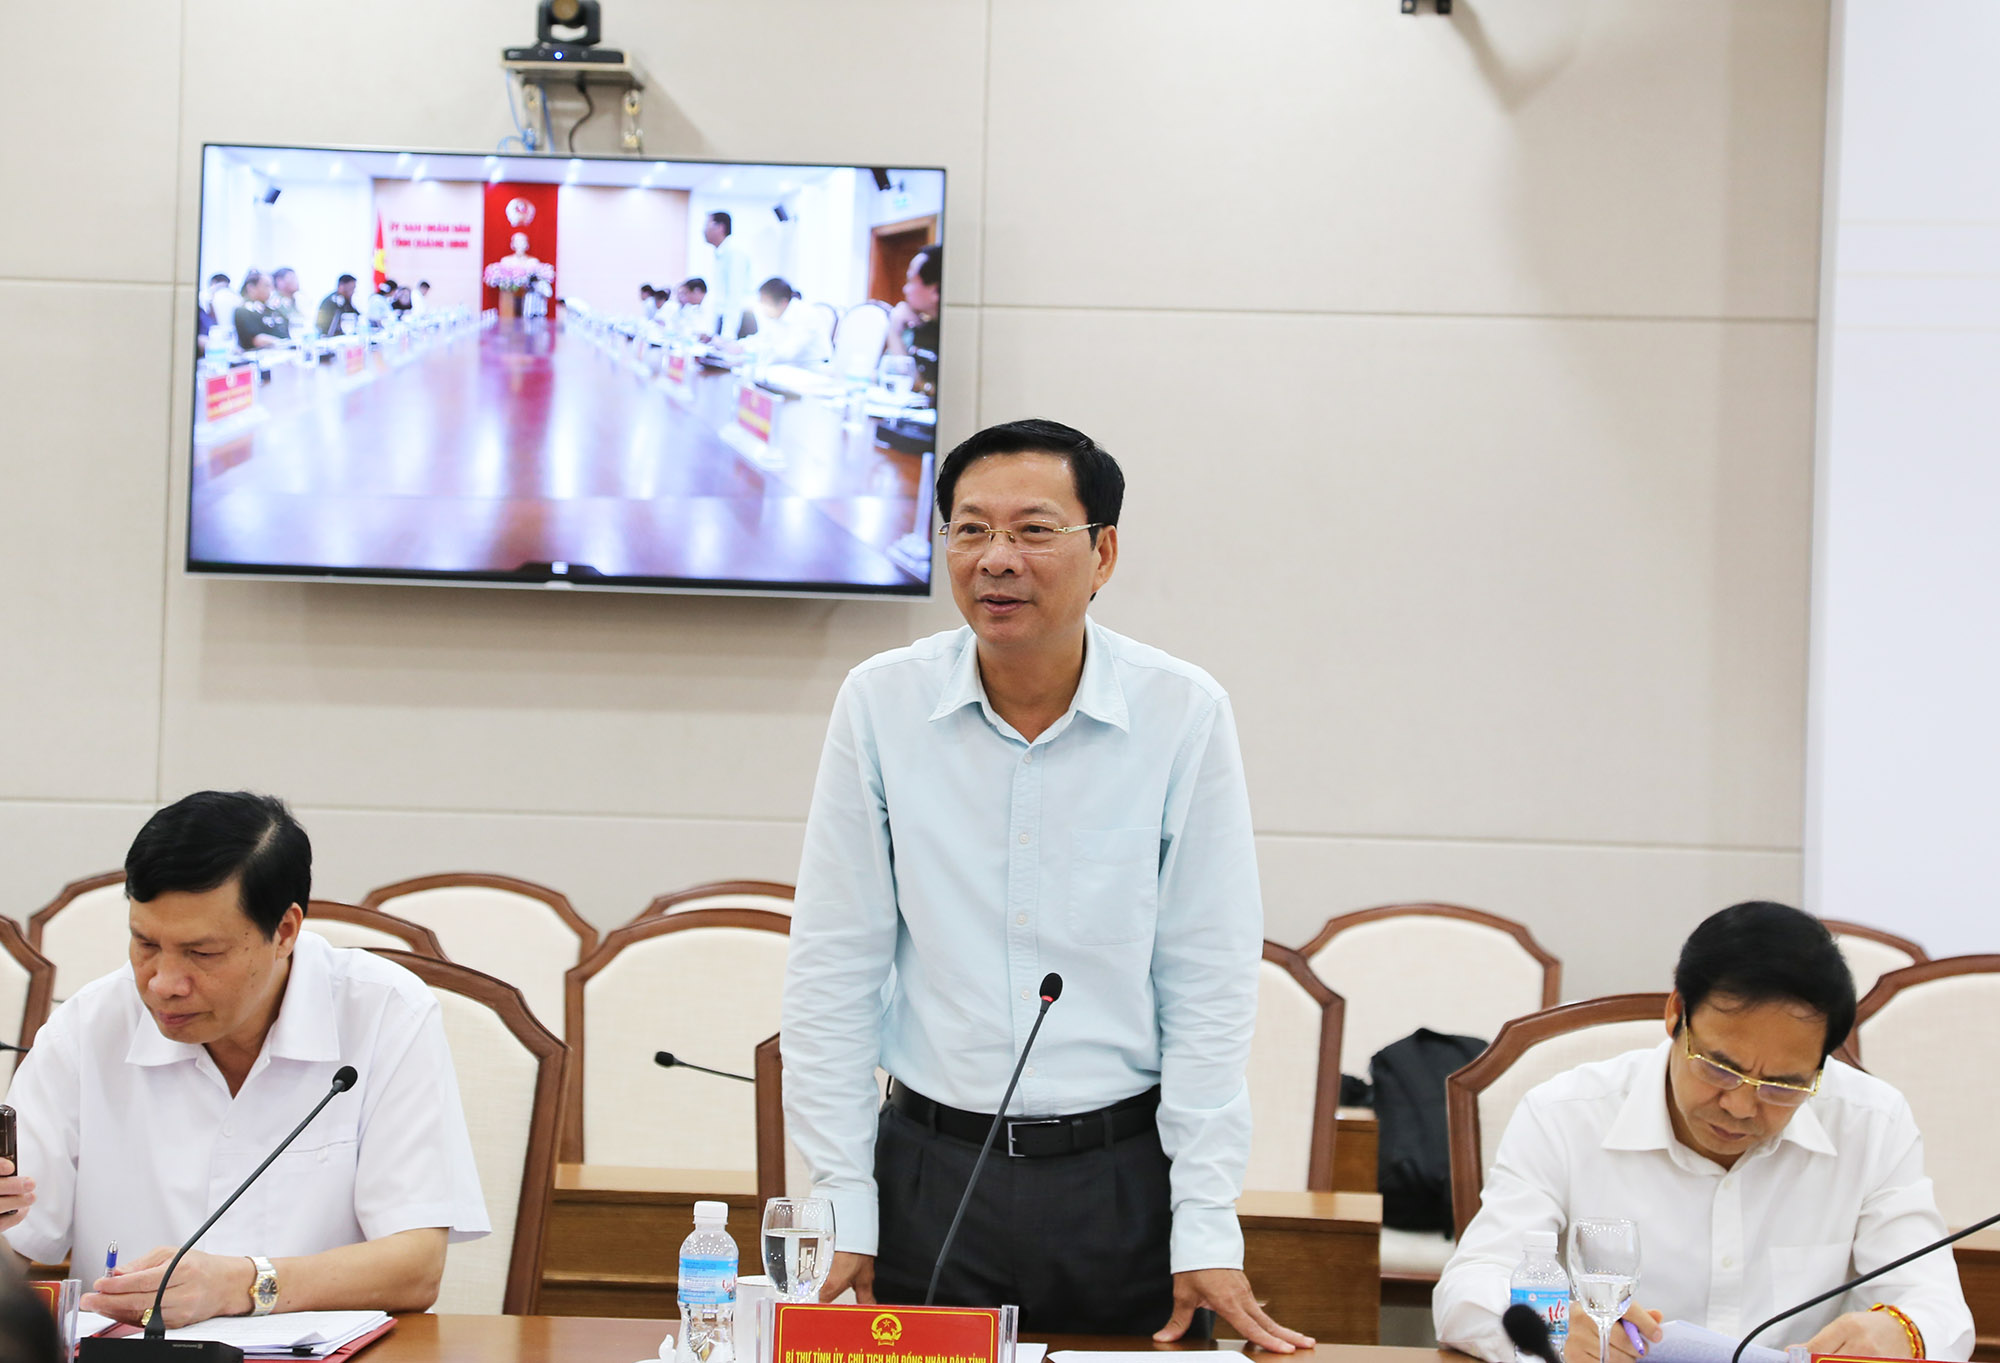 Đồng chí Nguyễn Văn Đọc, Bí thư Tỉnh ủy, Chủ tịch HĐND tỉnh phát biểu tại buổi làm việc.